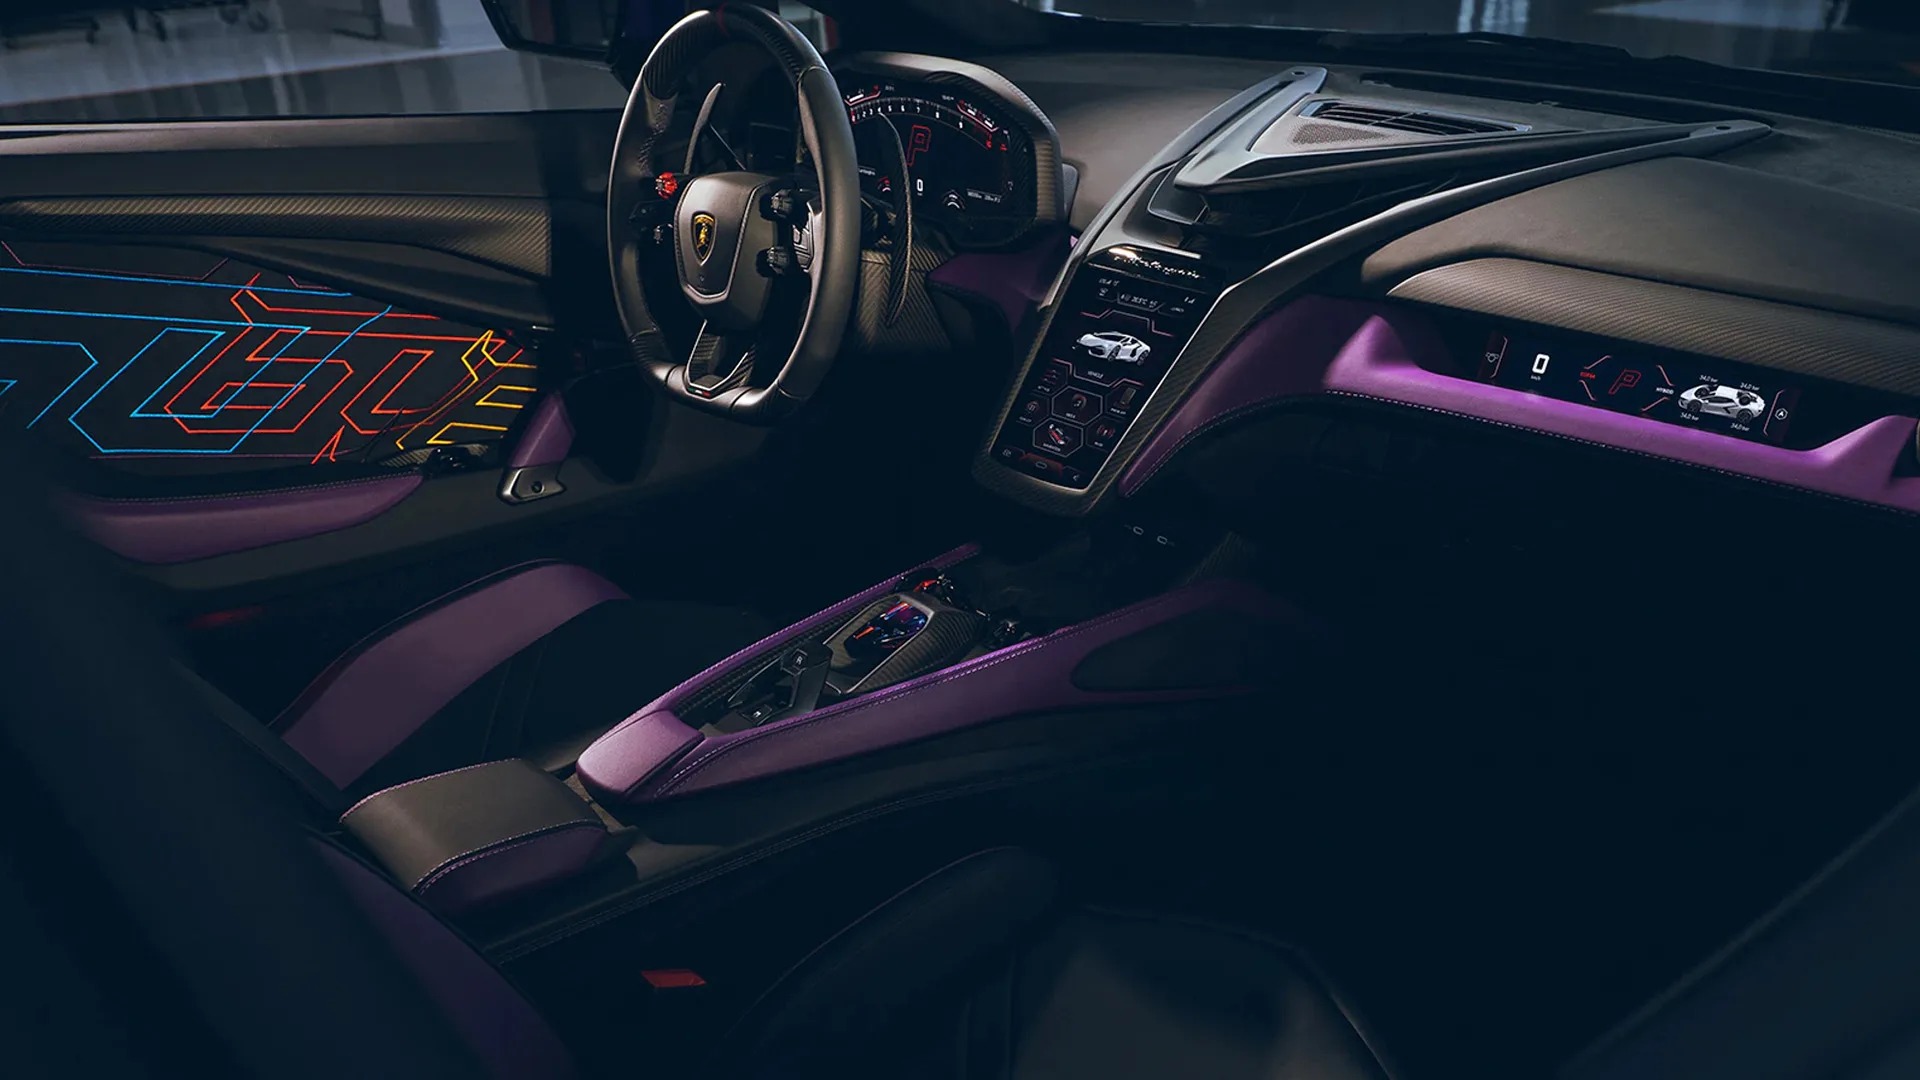 Chiếc Lamborghini Revuelto ‘tốn công tốn sức’ nhất là đây: Mất 435 tiếng sơn thủ công, 220 tiếng độ nội thất- Ảnh 7.